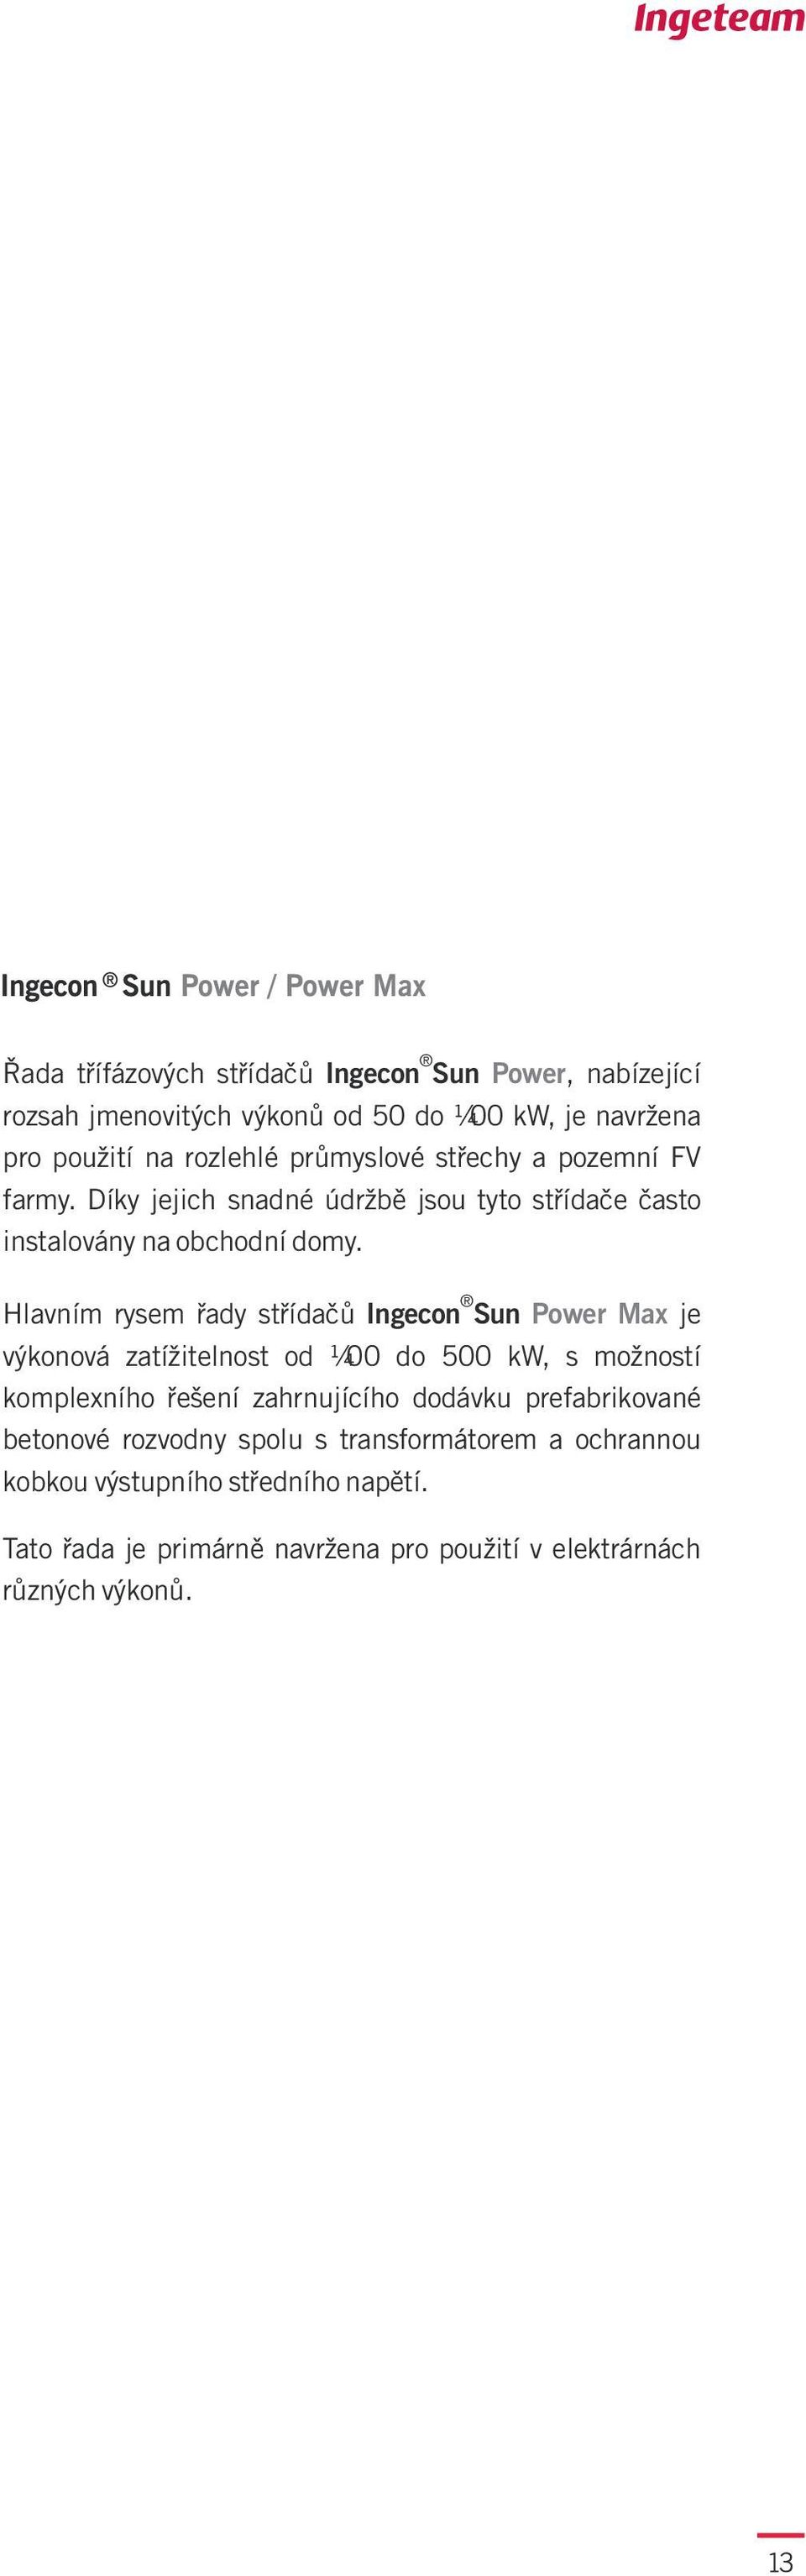 Hlavním rysem øady støídaèù Ingecon Sun Power Max je výkonová zatížitelnost od 00 do 500 kw, s možností komplexního øešení zahrnujícího dodávku